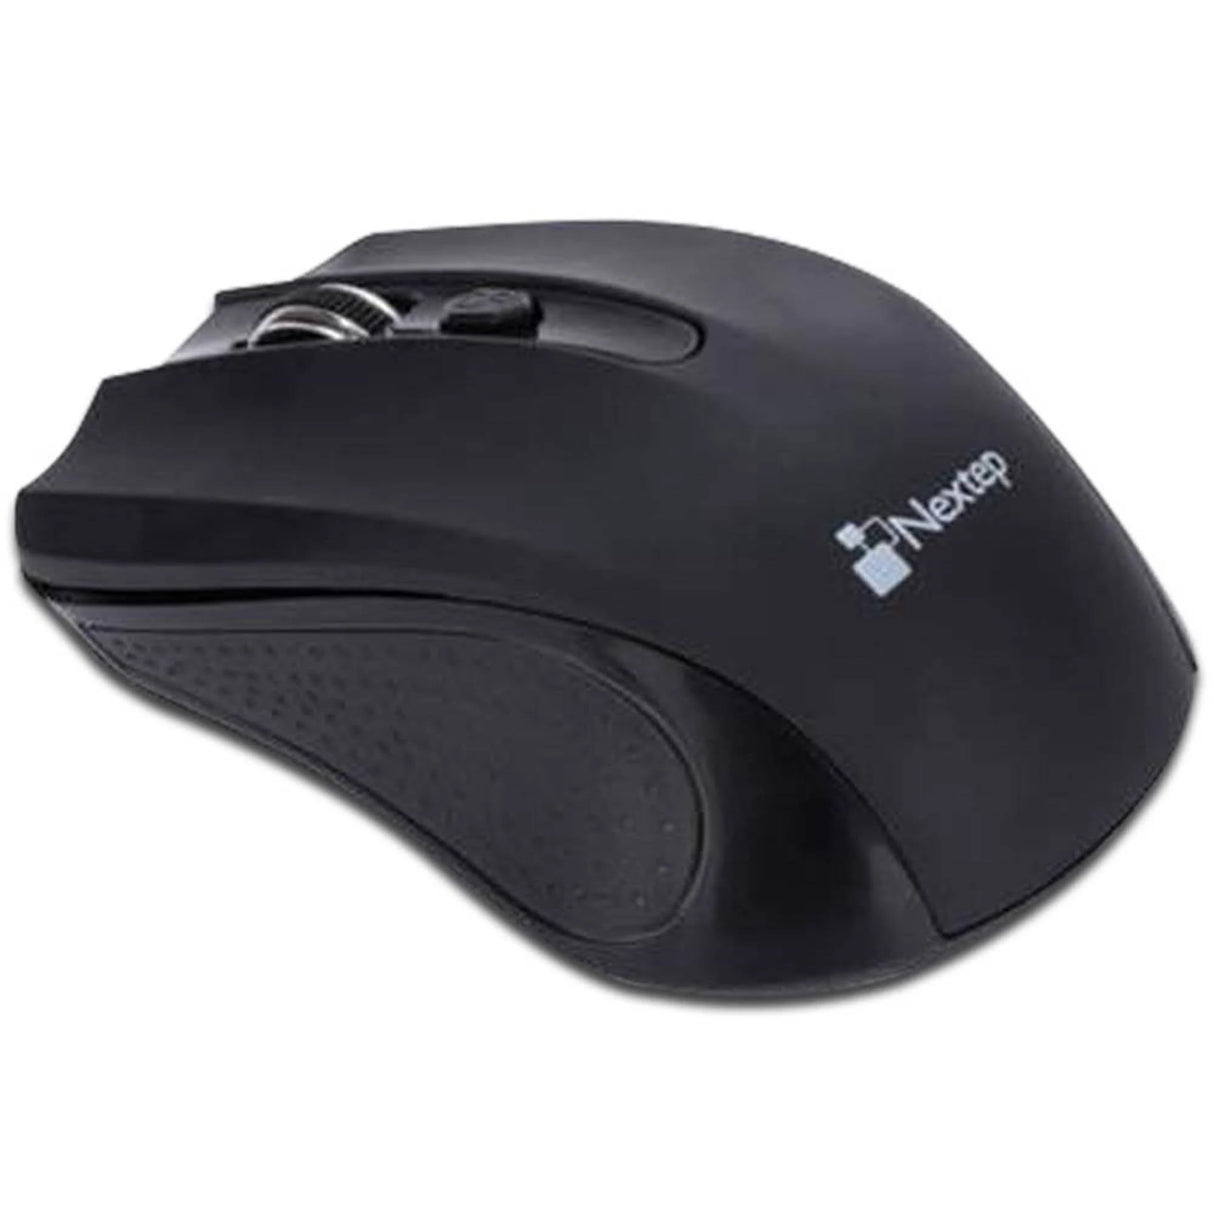 Mouse Nextep Inalambrico Usb 1600 Dpi Baterias Incluidas Color Negro FullOffice.com